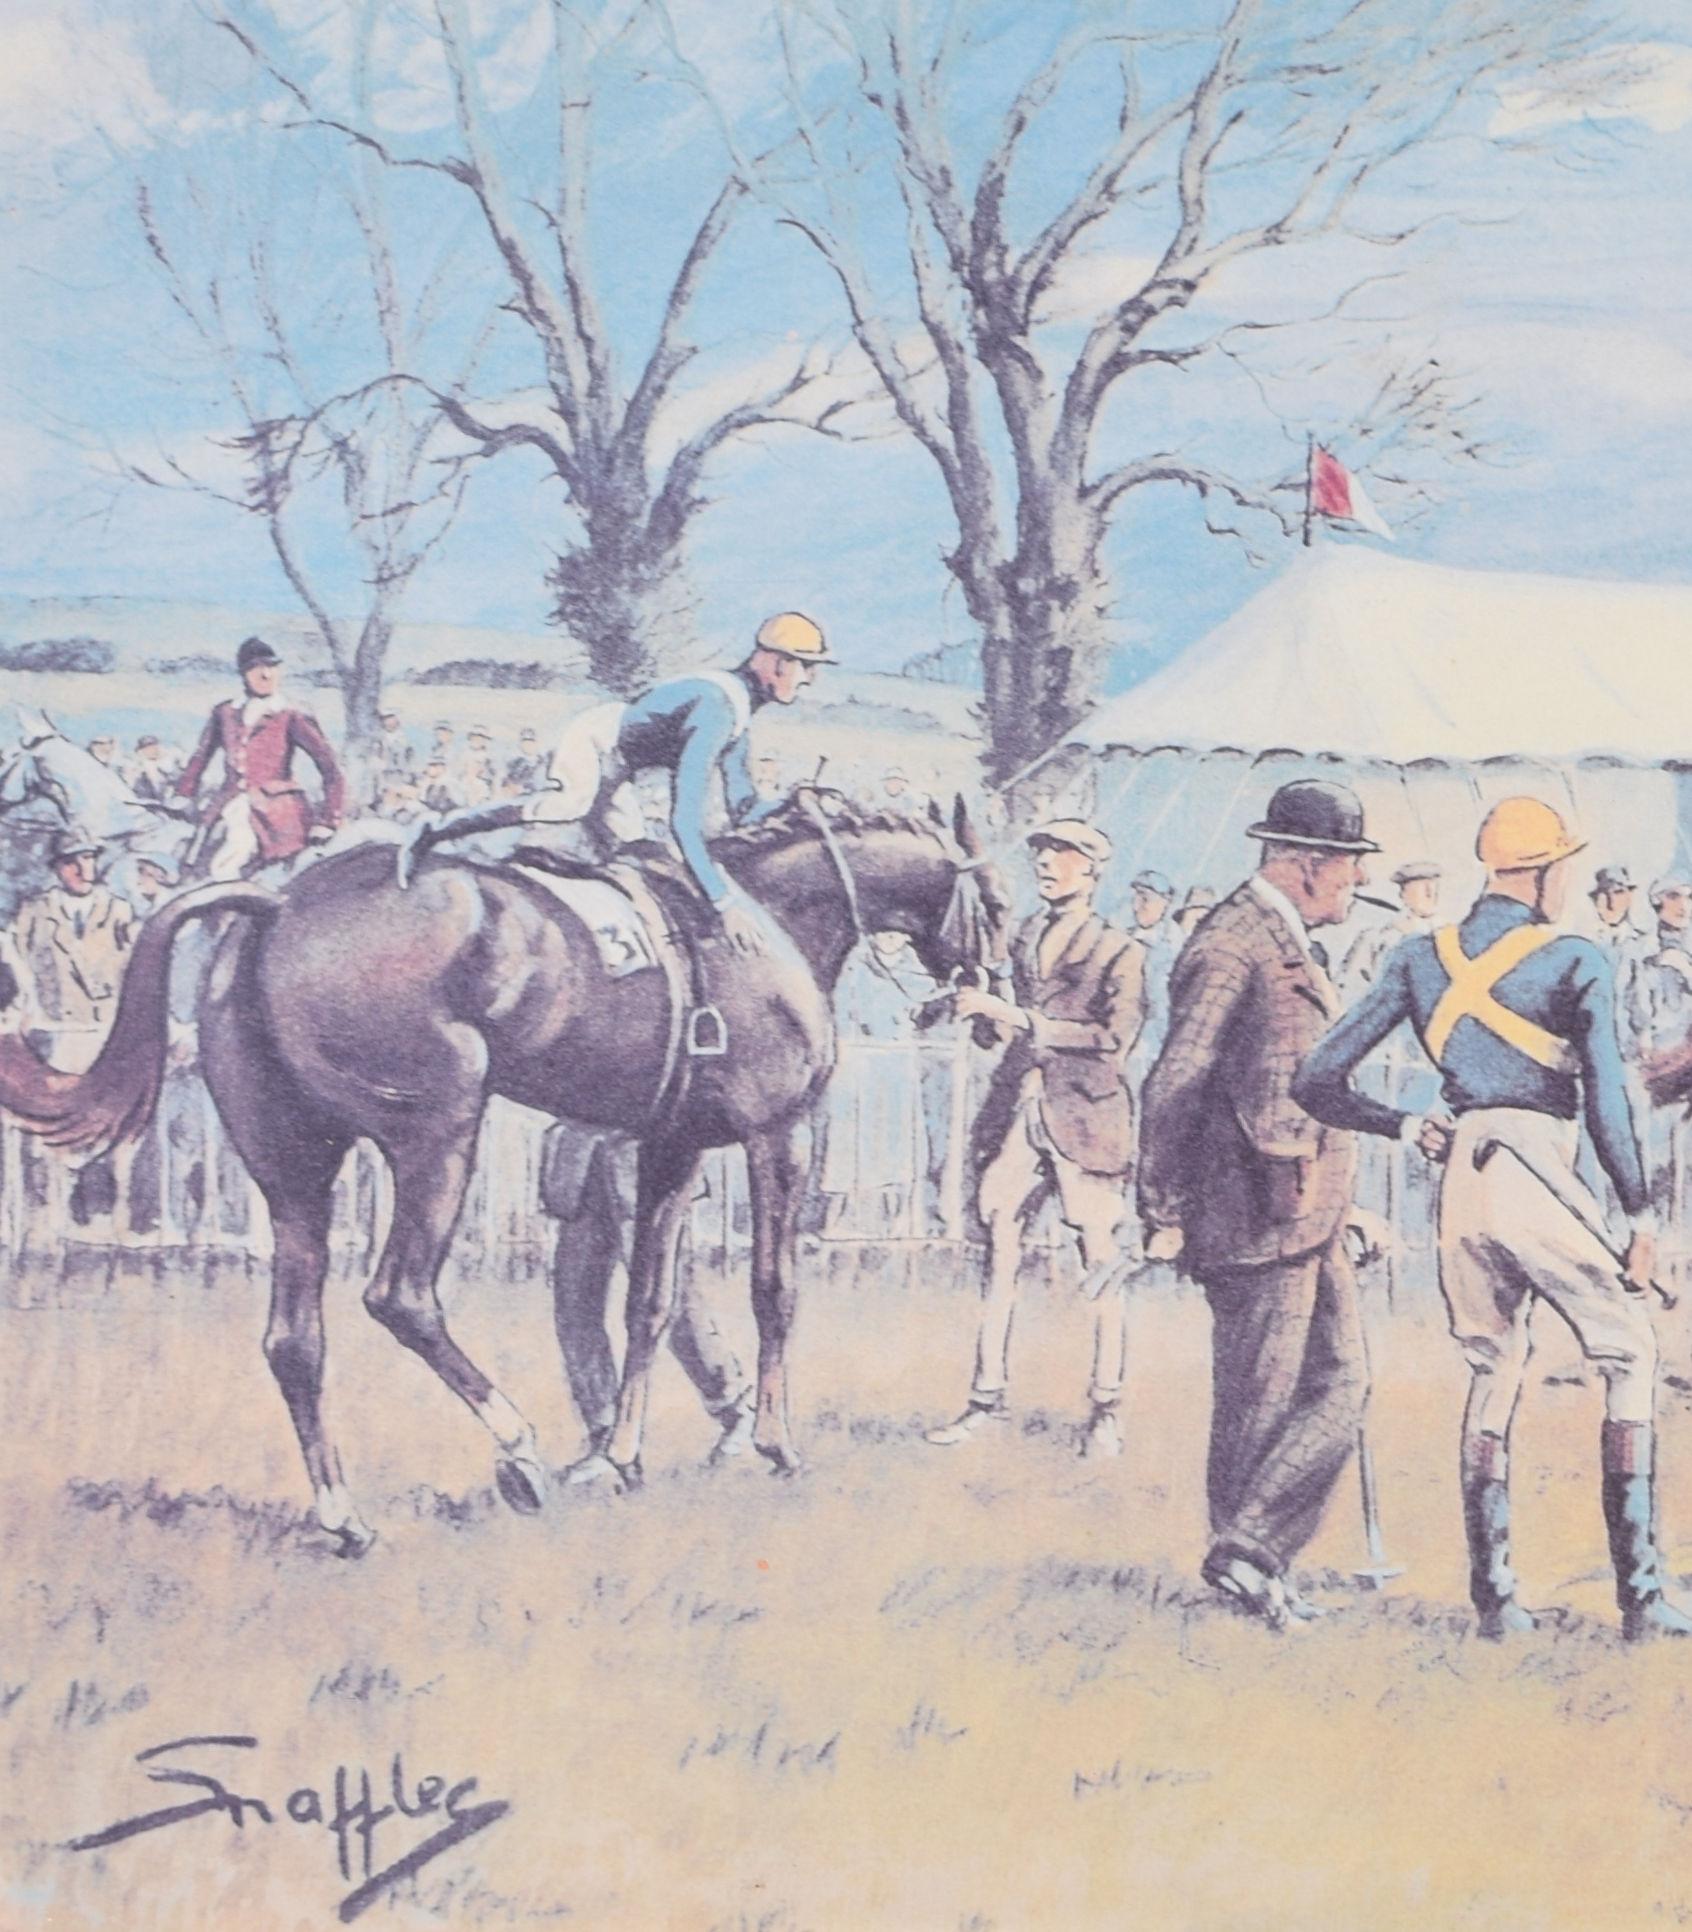 Impression de courses de chevaux signée « Oh to be in England » par Snaffles - Print de Charles 